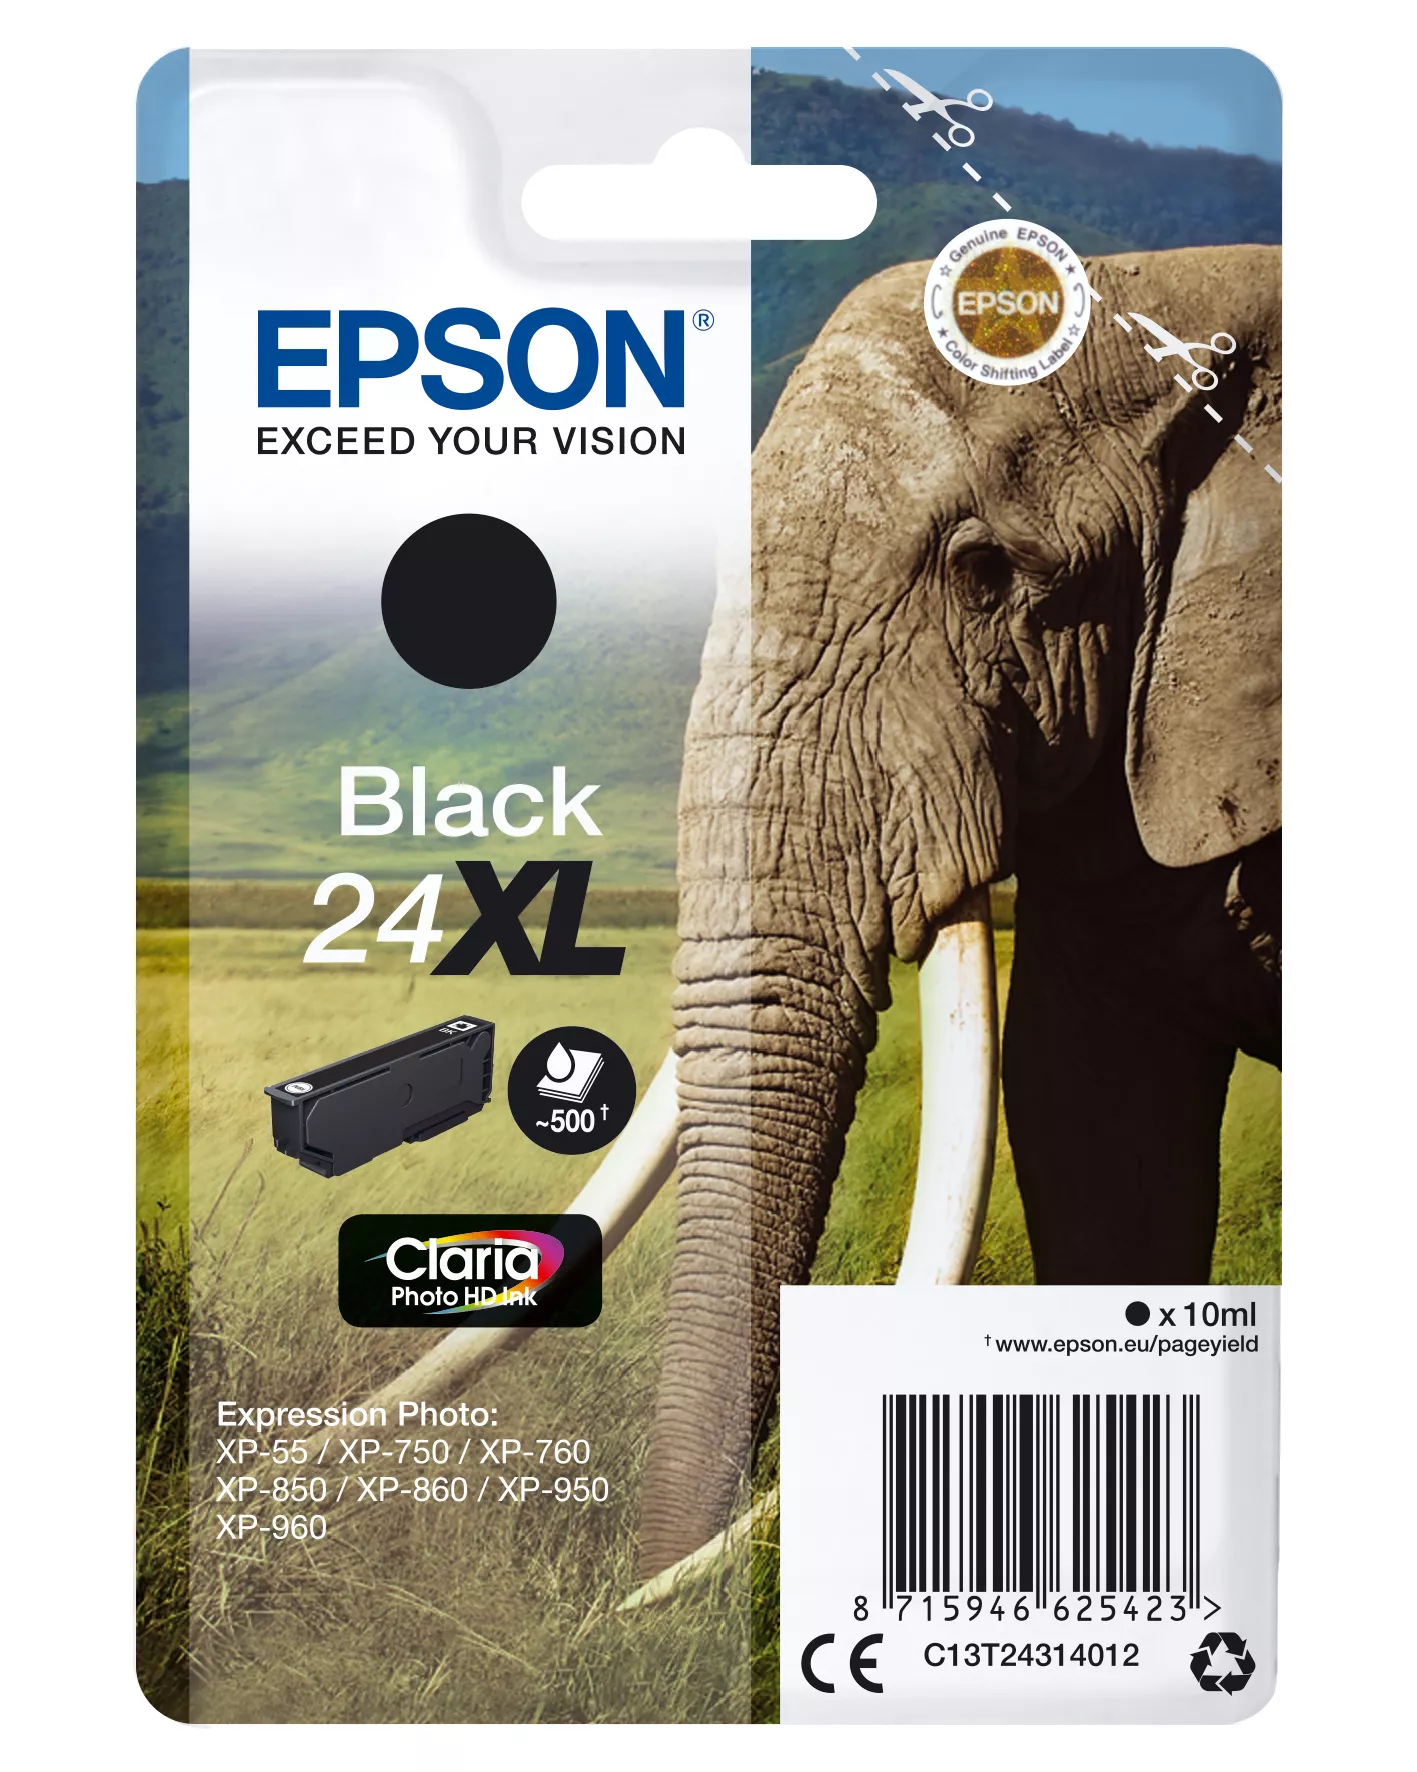 Vente EPSON 24XL cartouche dencre noir haute capacité 10ml 500 au meilleur prix